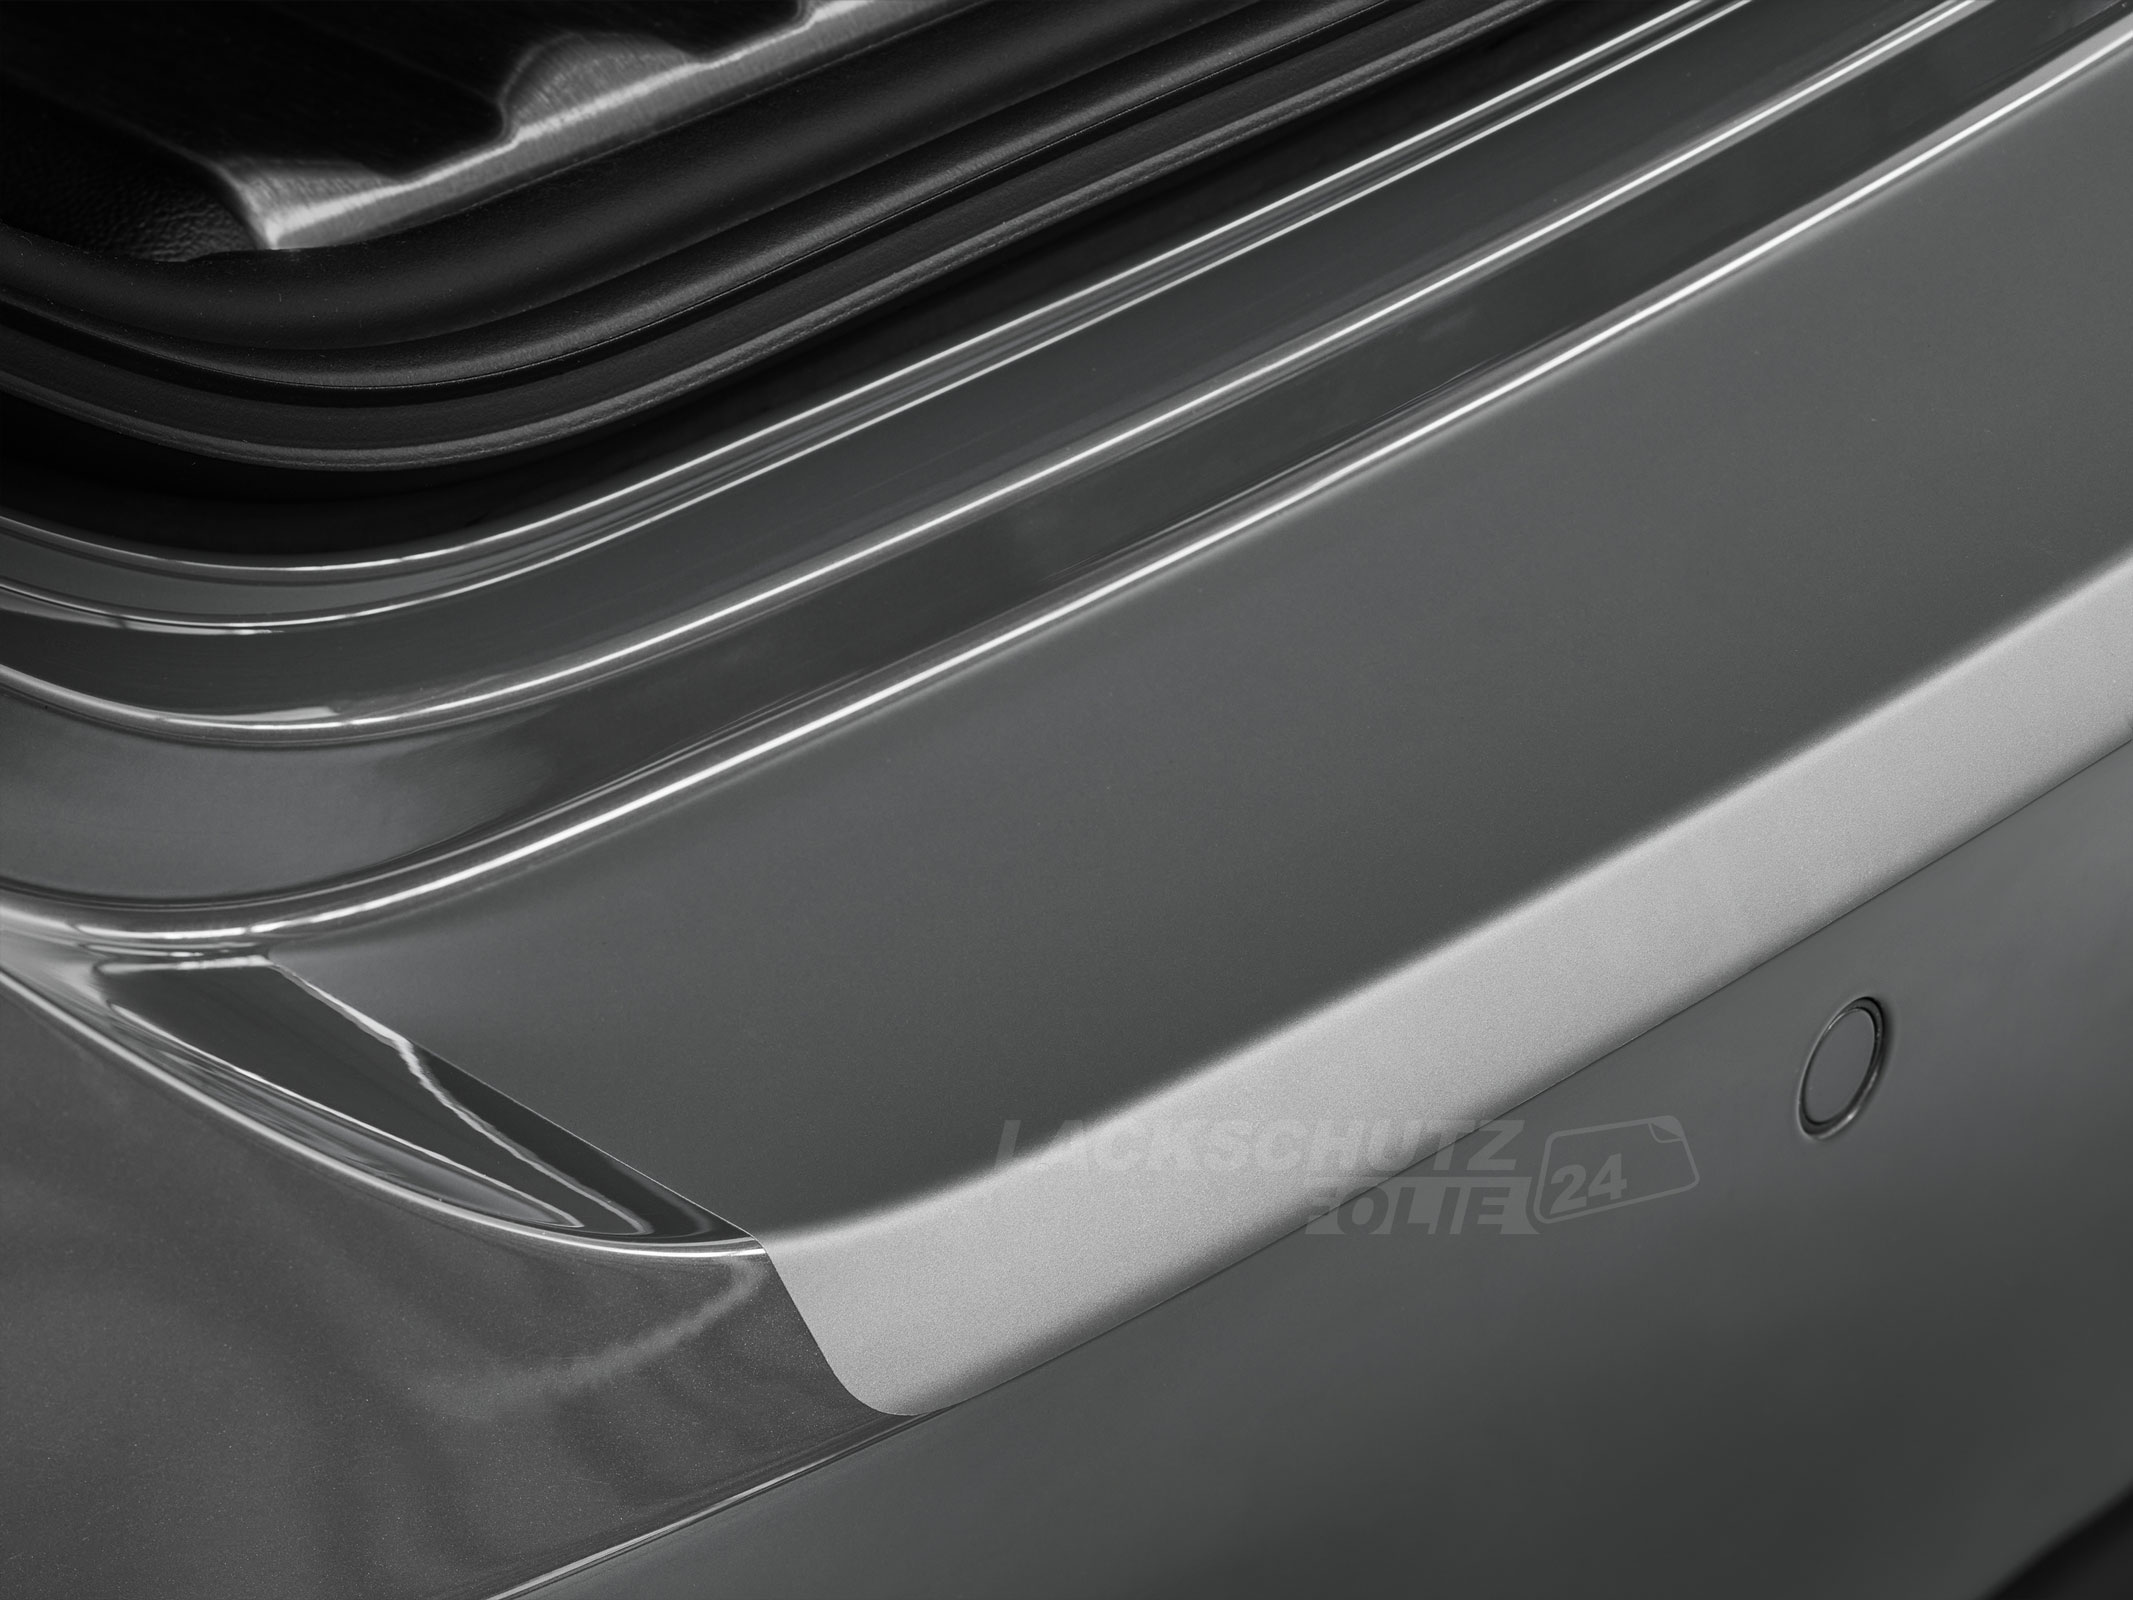 Ladekantenschutzfolie - Transparent Glatt MATT für BMW 1er  Typ F20 / F21, ab BJ 09/2011-01/2015